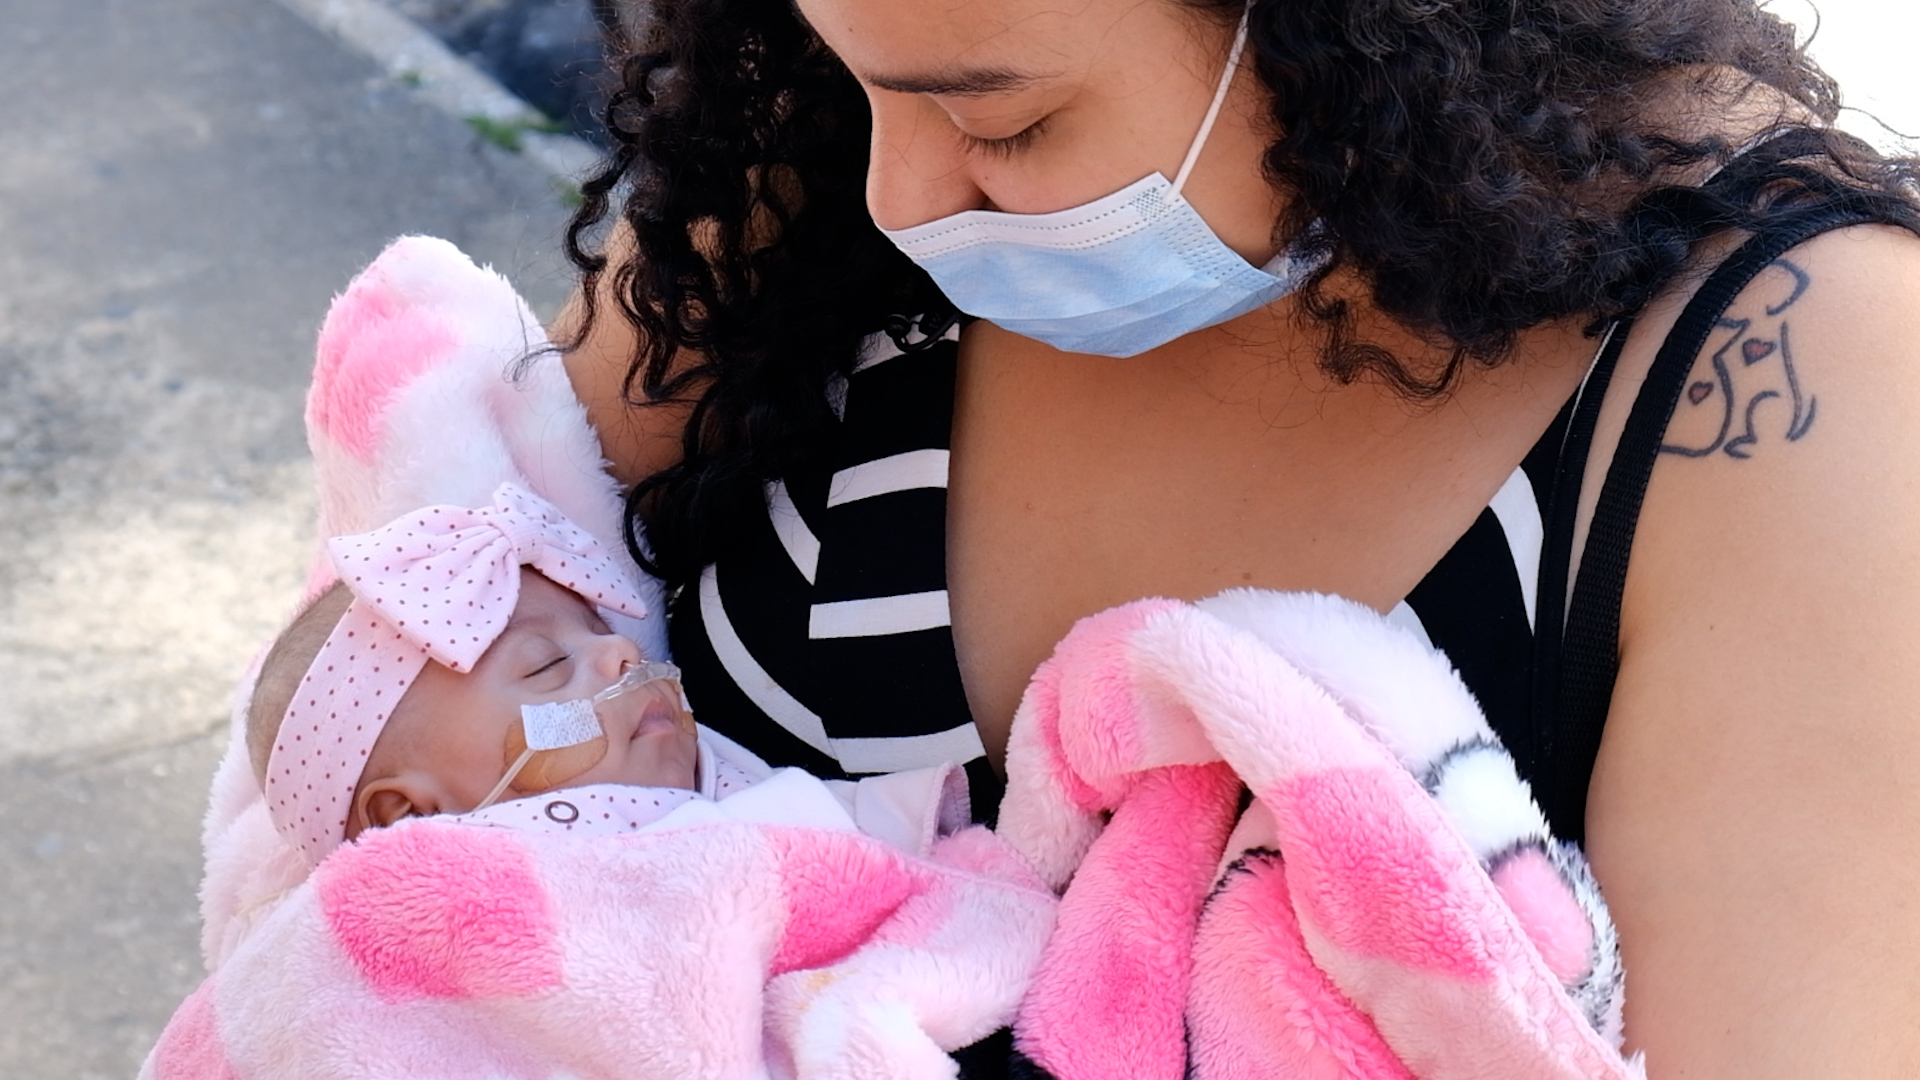 A foto mostra Camila, uma mulher jovem de cabelos escuros, segurando nos braços um pequeno bebê envolto em um cobertor cor-de-rosa